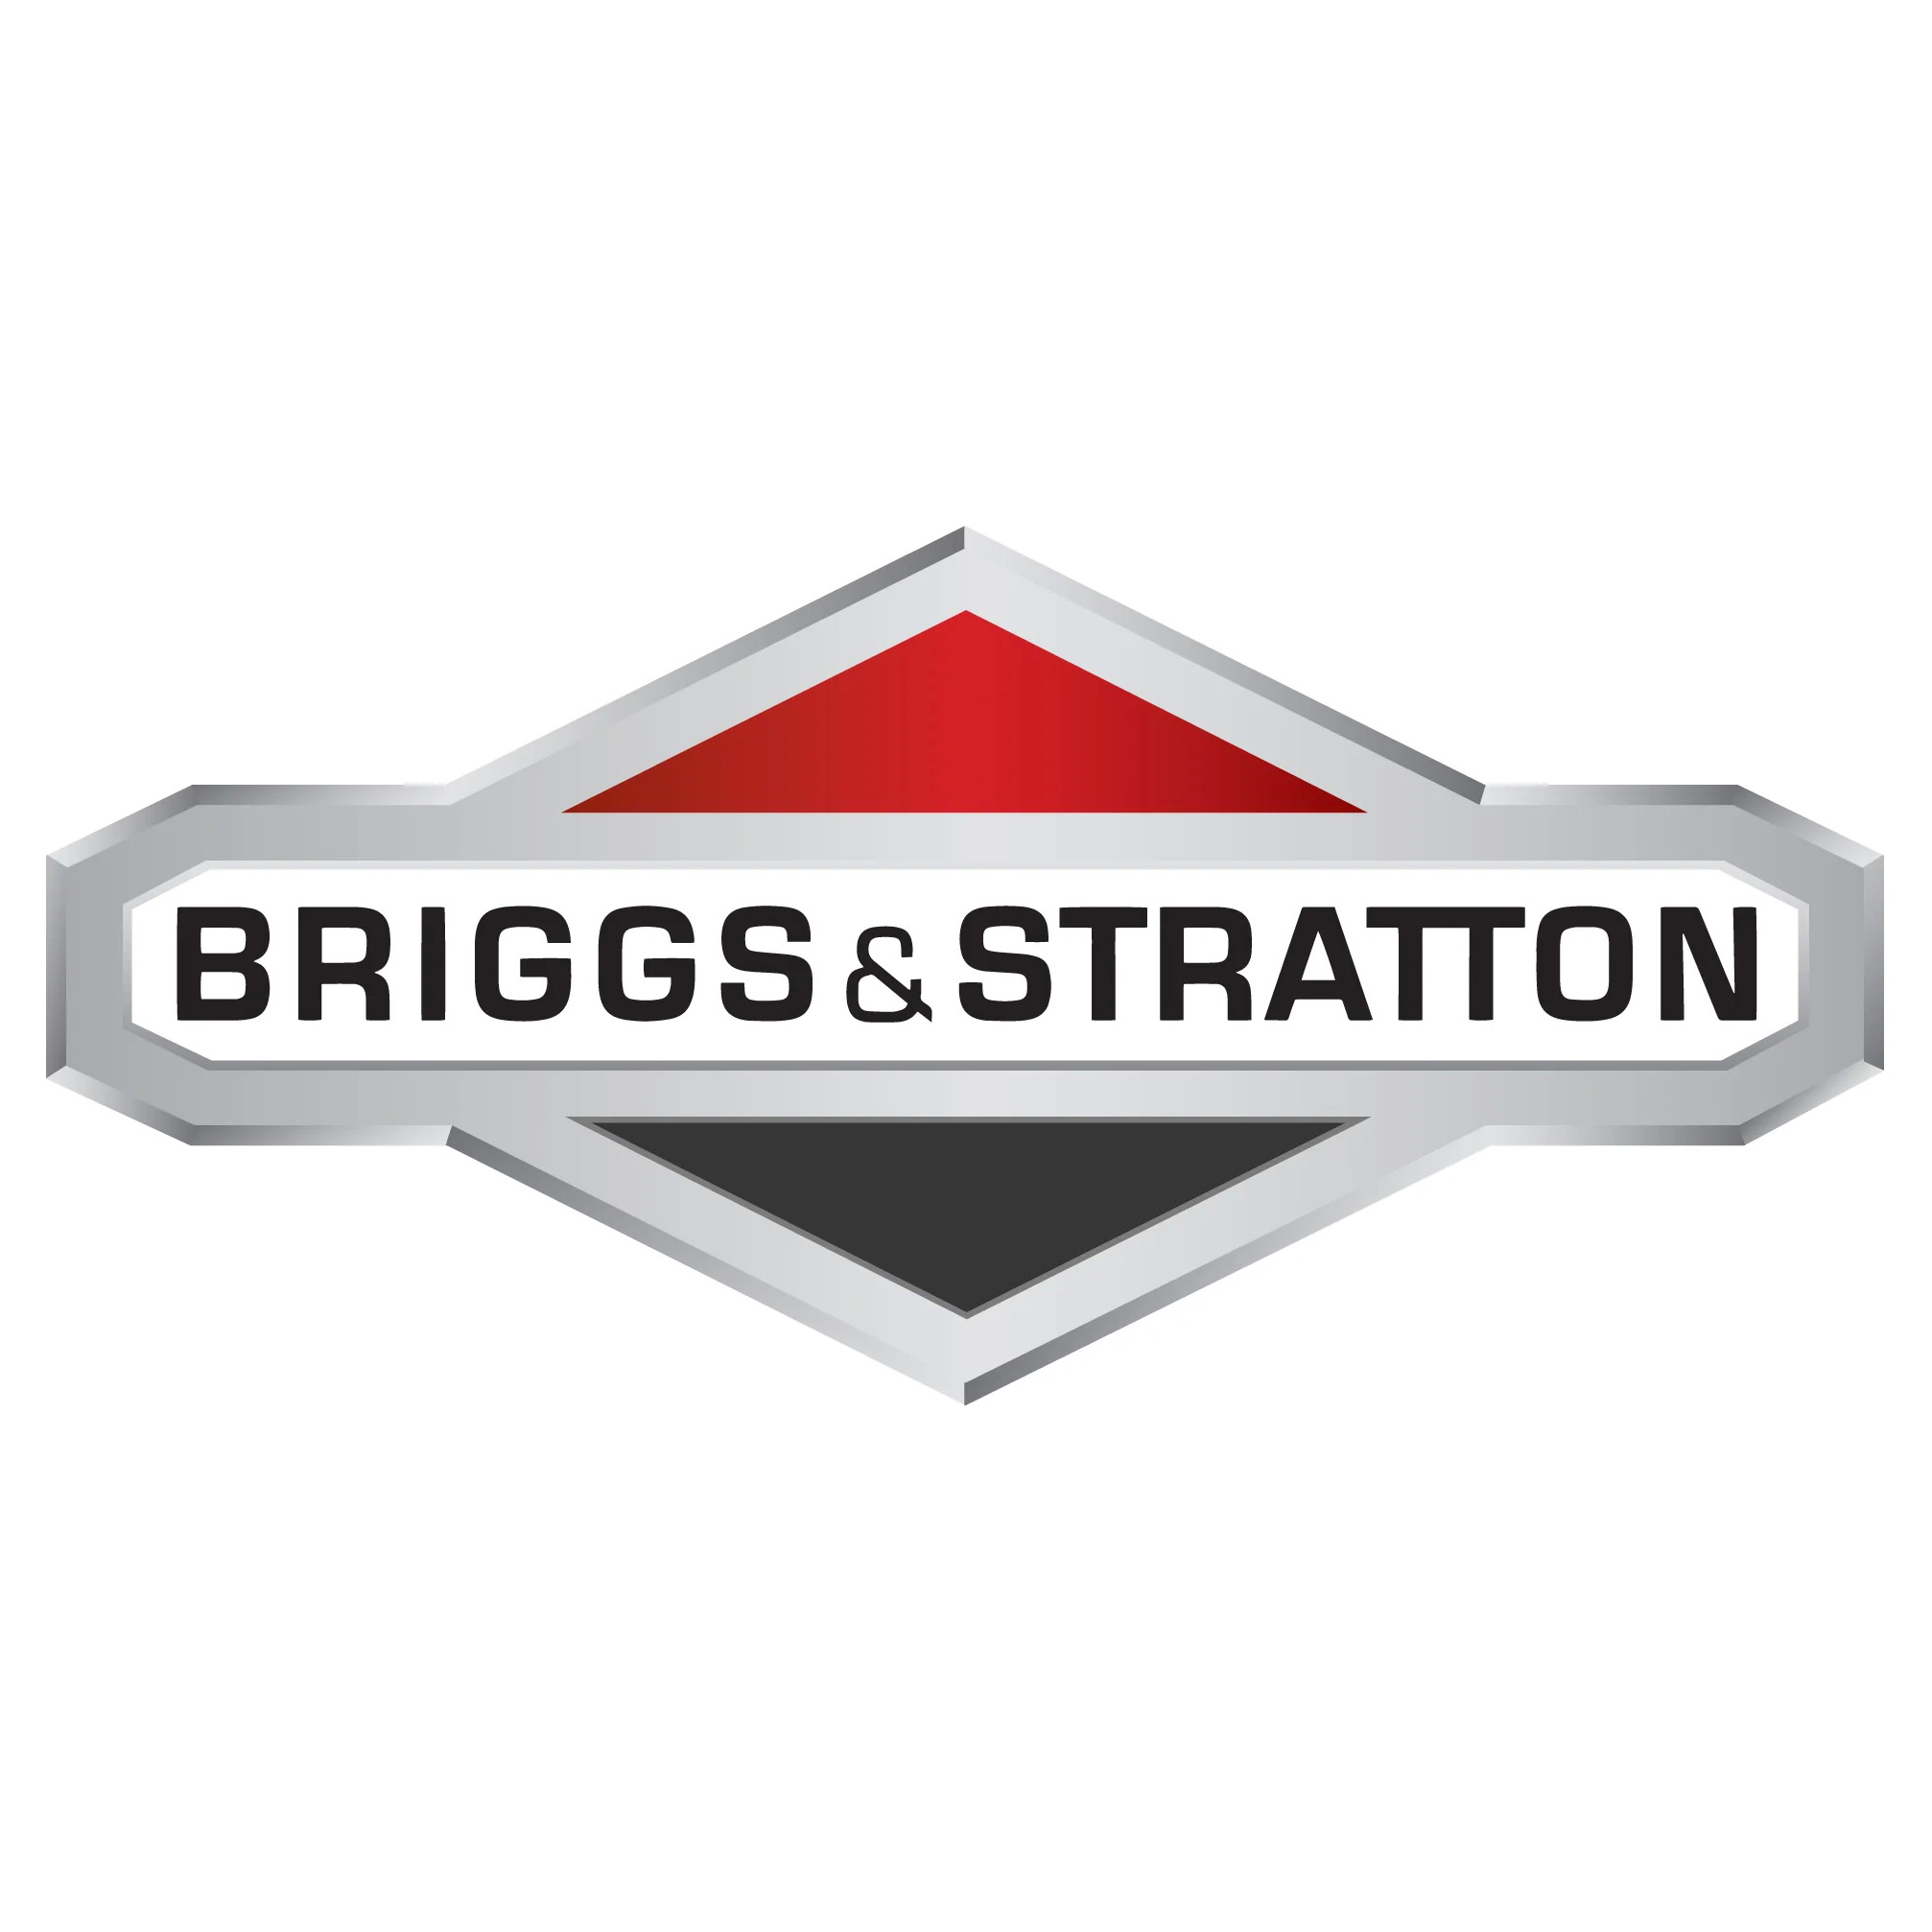 Подметальная машина оснащена мощным зимним двигателем Briggs&Stratton 950 Snow Series с ручным стартером